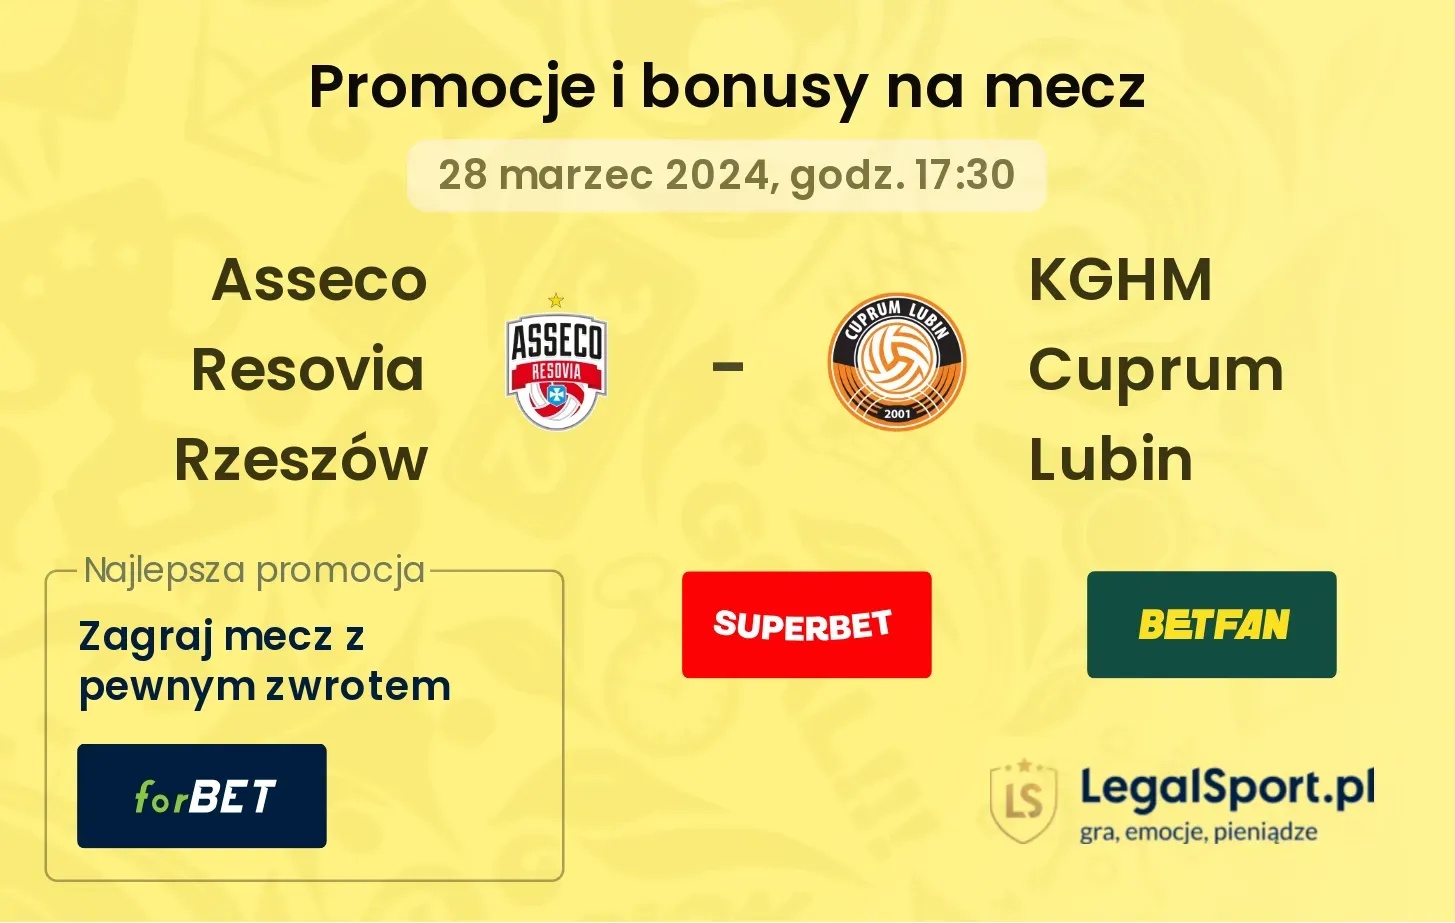 Asseco Resovia Rzeszów - KGHM Cuprum Lubin promocje bonusy na mecz